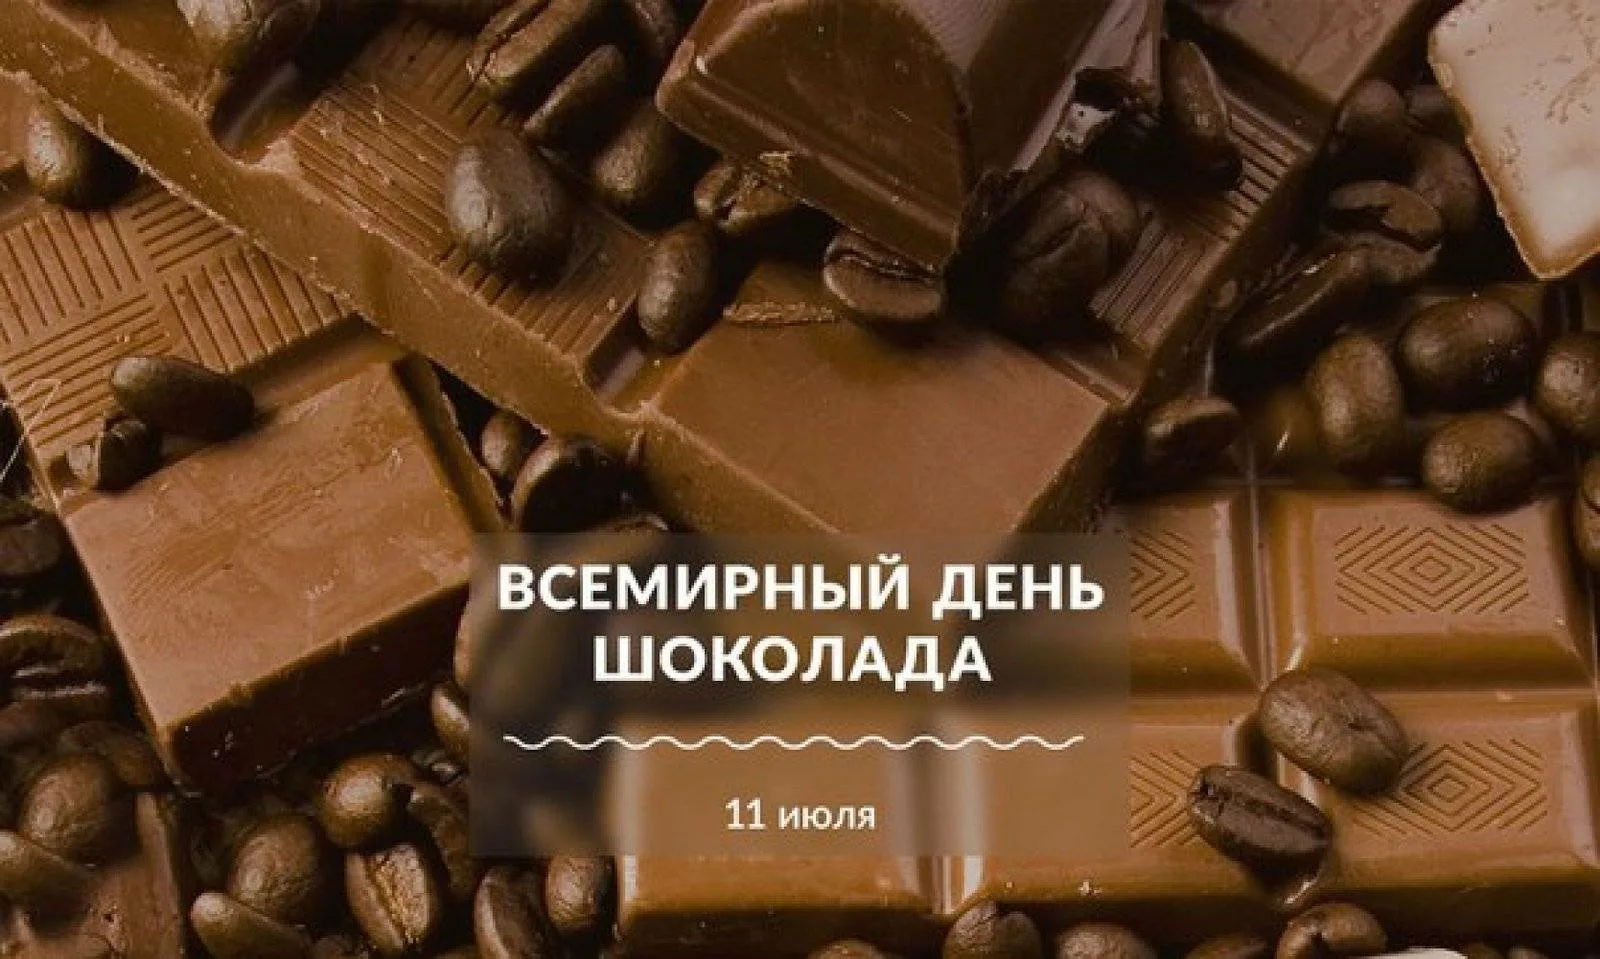 Всемирный день шоколада. Всемирный день шоколада 11 июля. 11 Июля день шоколада. 11 Июля шоколад.